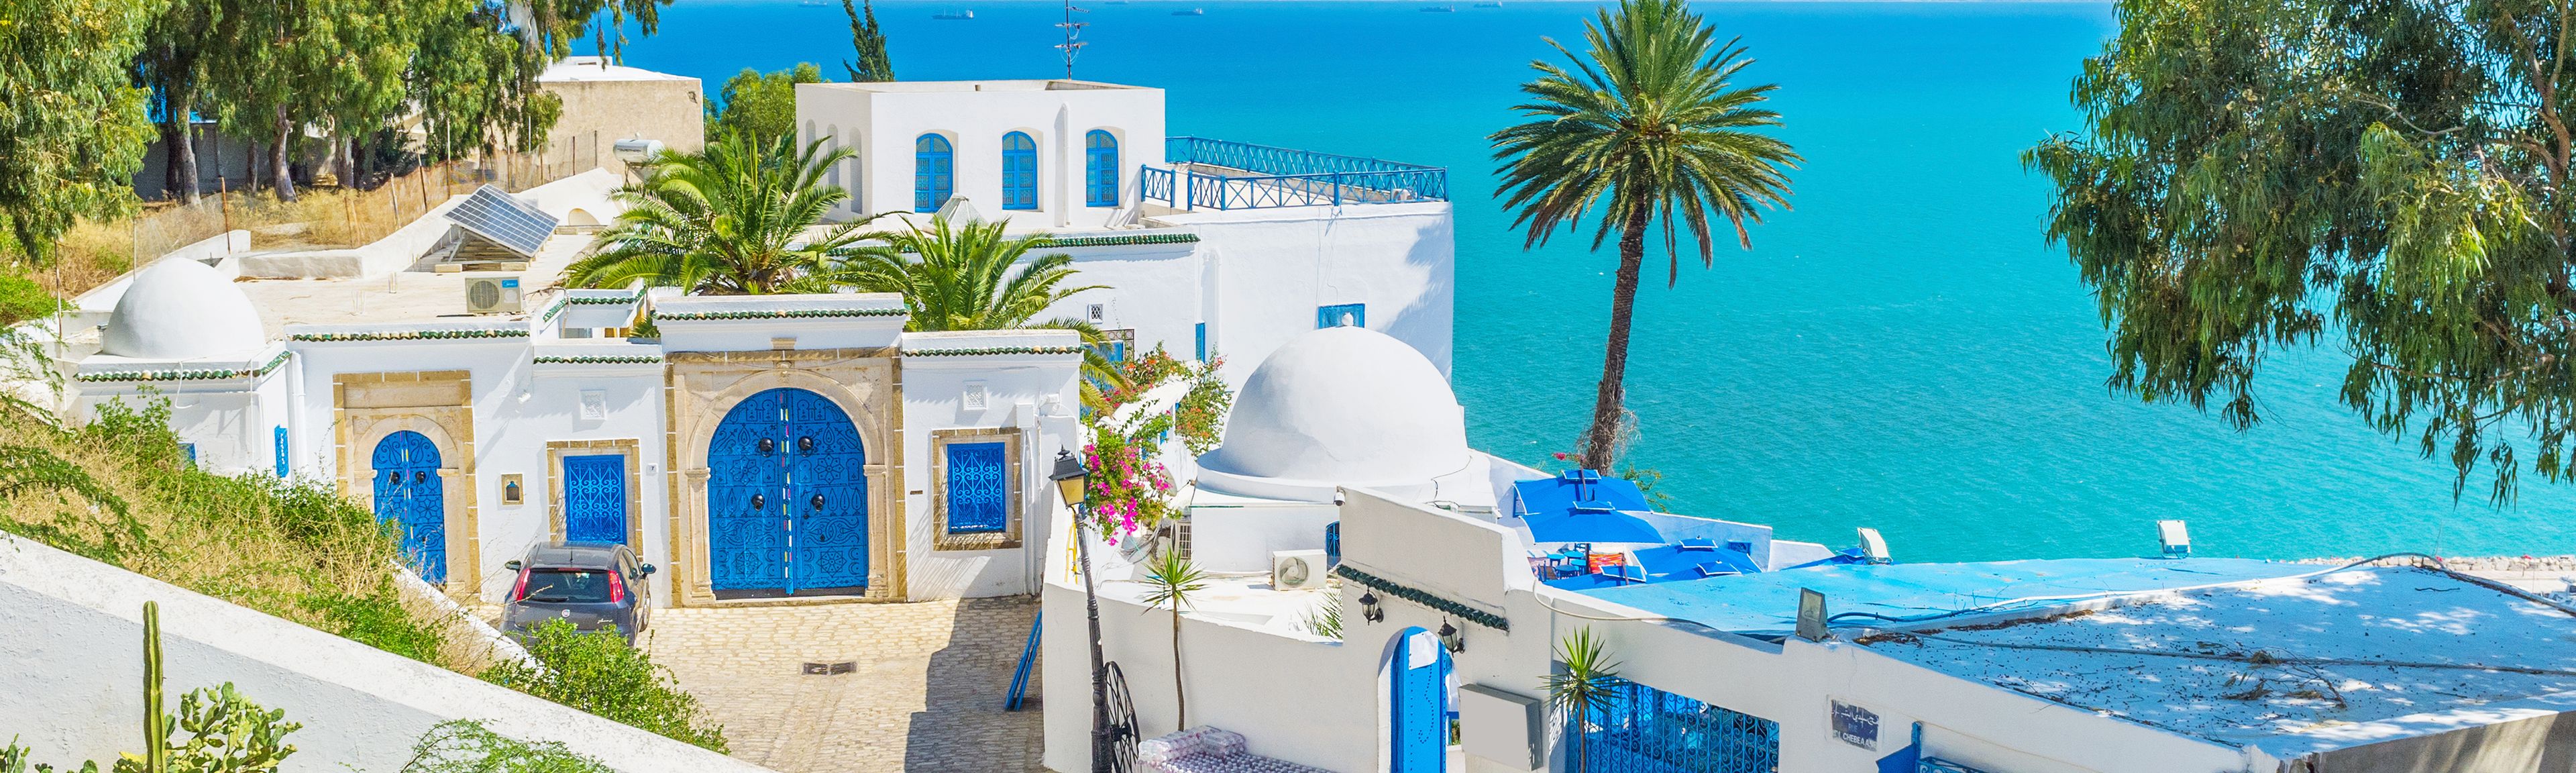 Petites maisons en Tunisie avec la mer en arrière-plan